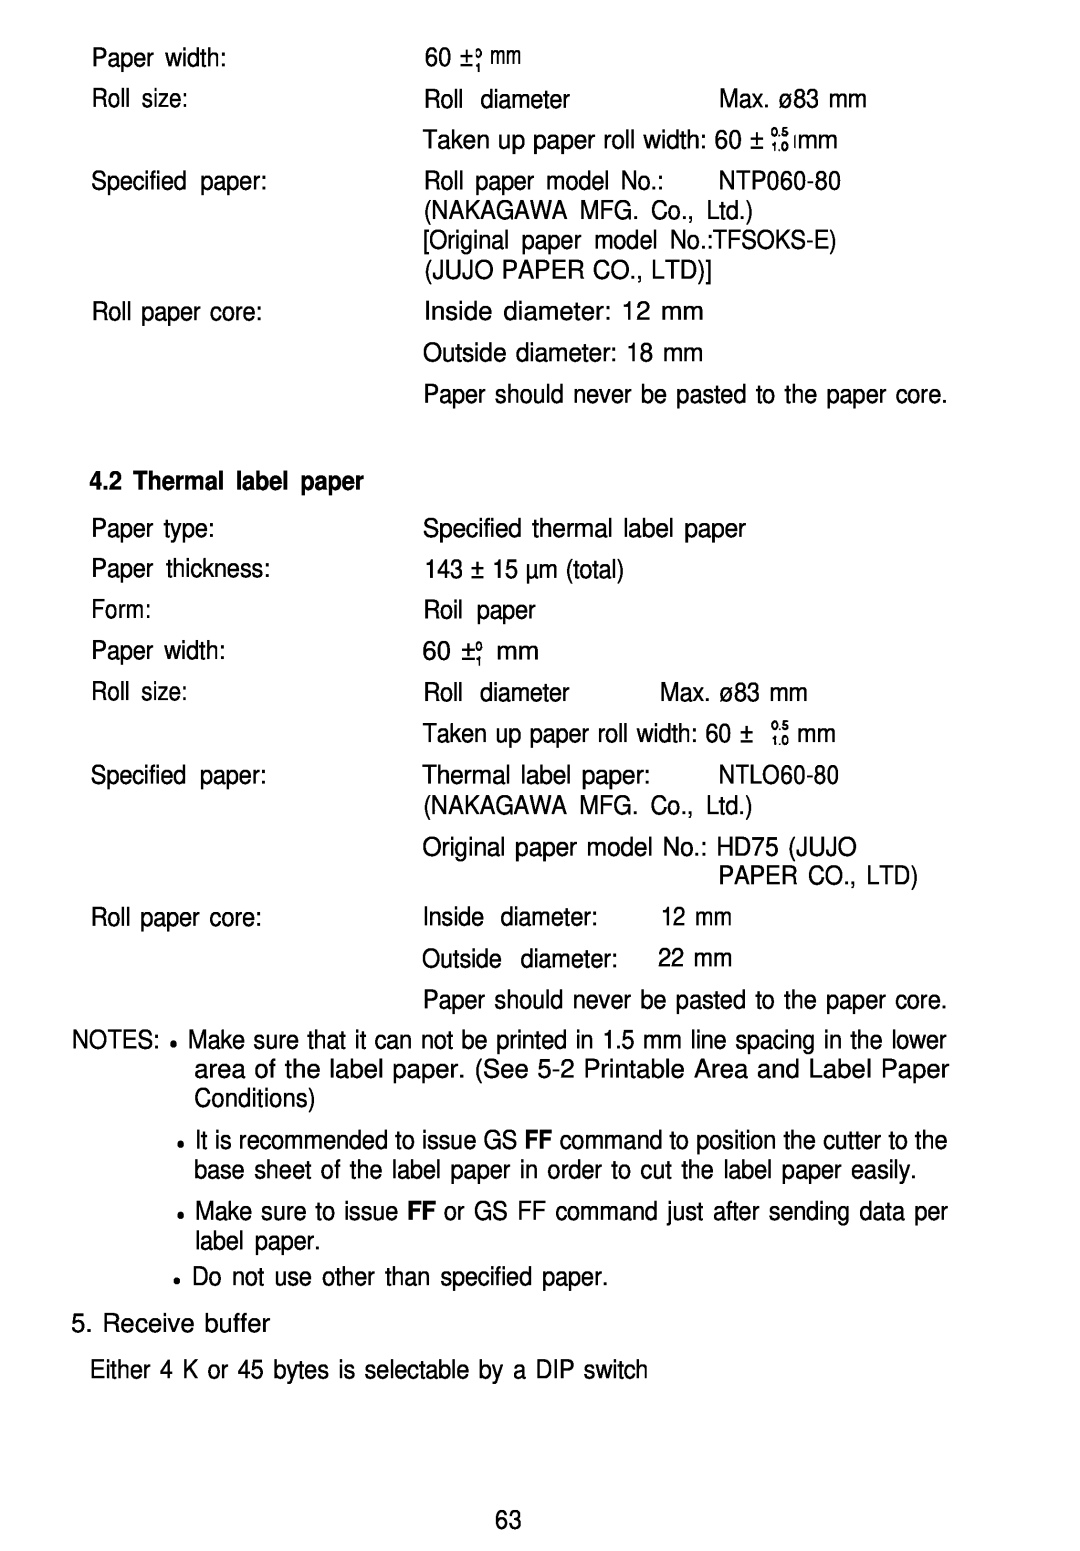 Seiko Group TM-L60 manual Thermal label paper 